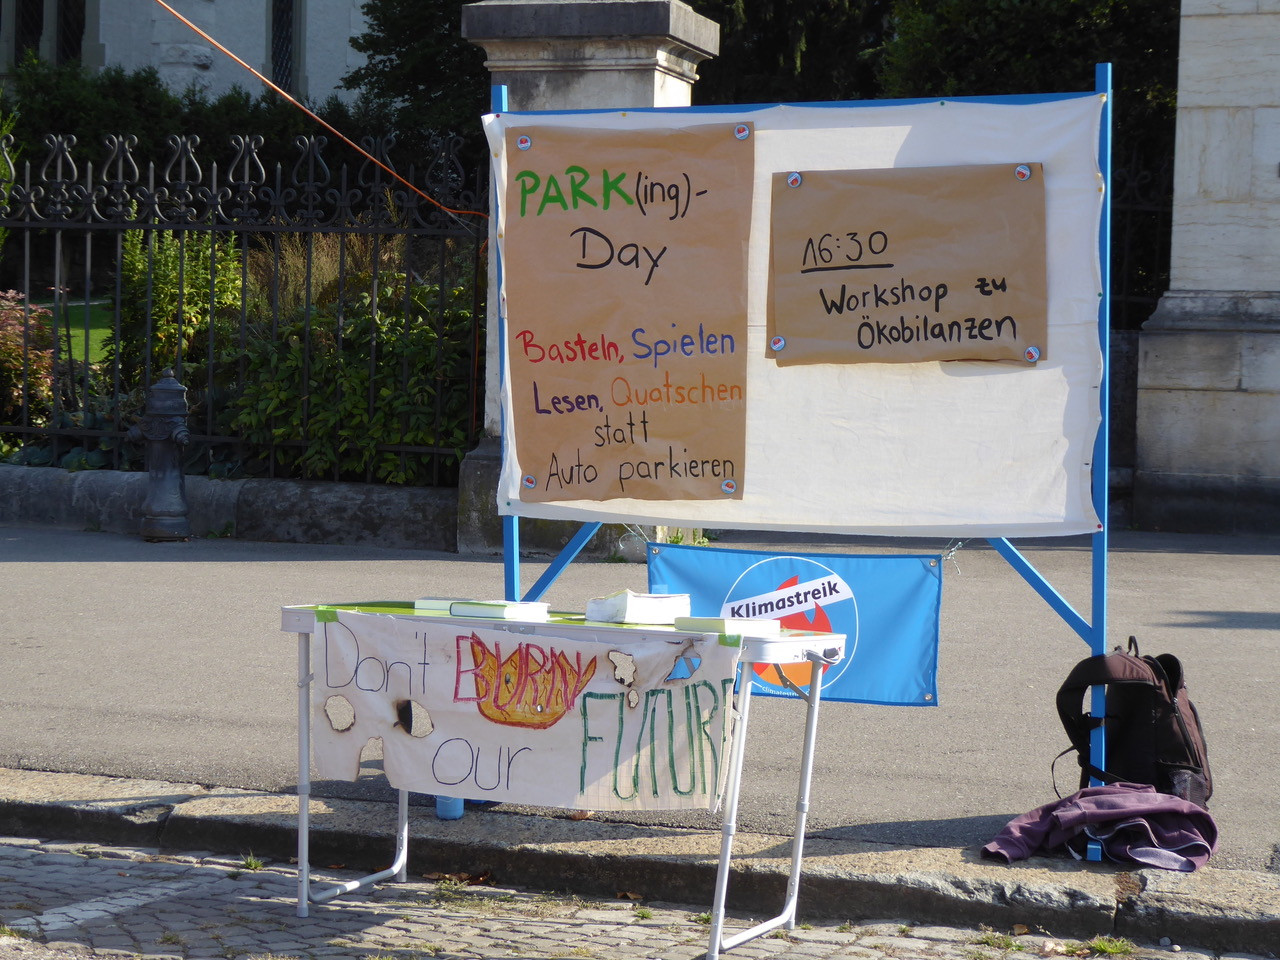 Gemeinsam spielen, lernen, basteln. Der Klimastreik setzt auf Kreativität statt Blechbüsen am PARK(ing) Day 2020 in Bern